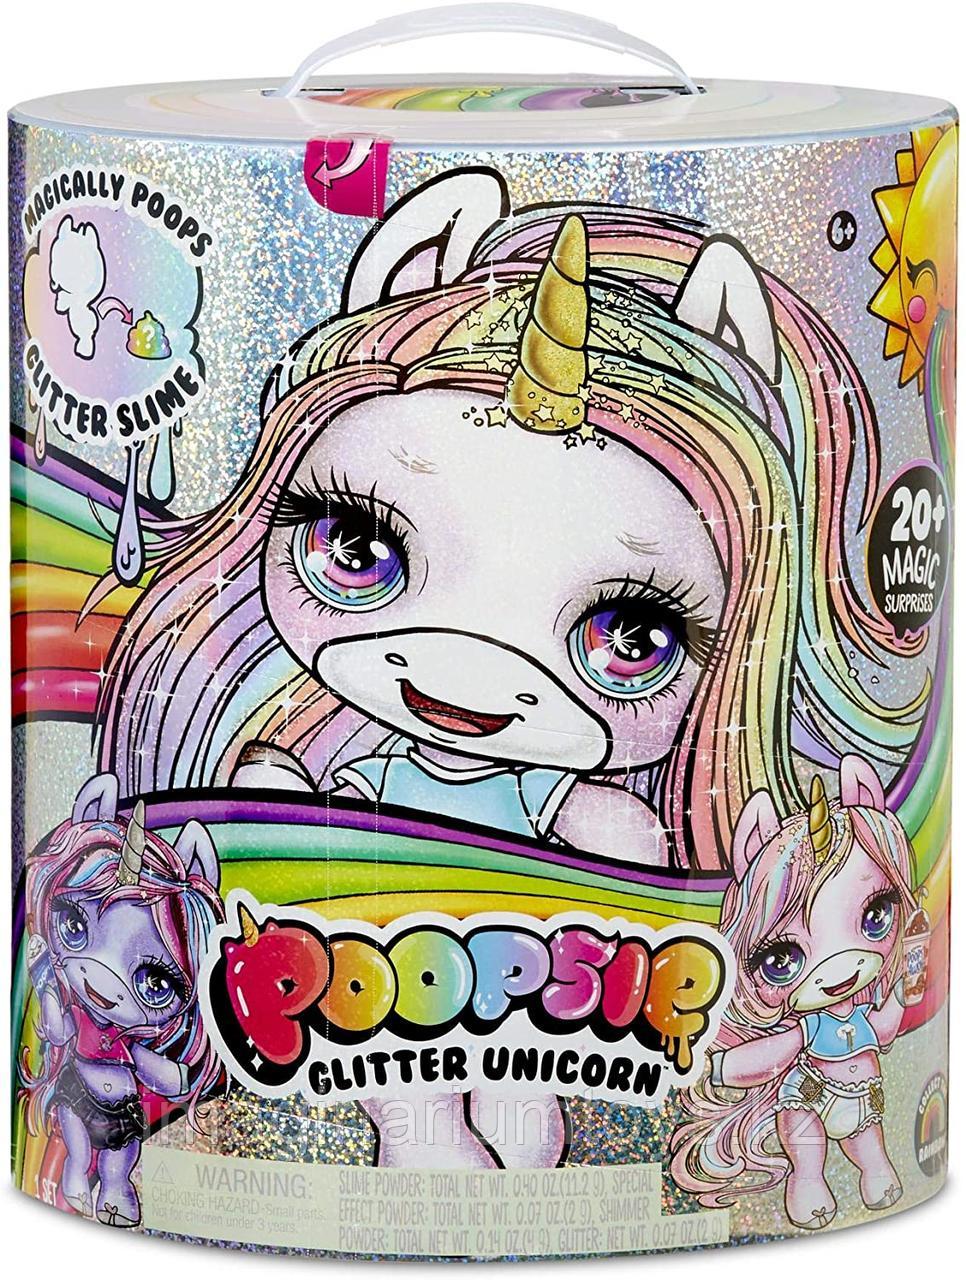 Пупси единорог со слаймом Poopsie Glitter Unicorn, фото 1